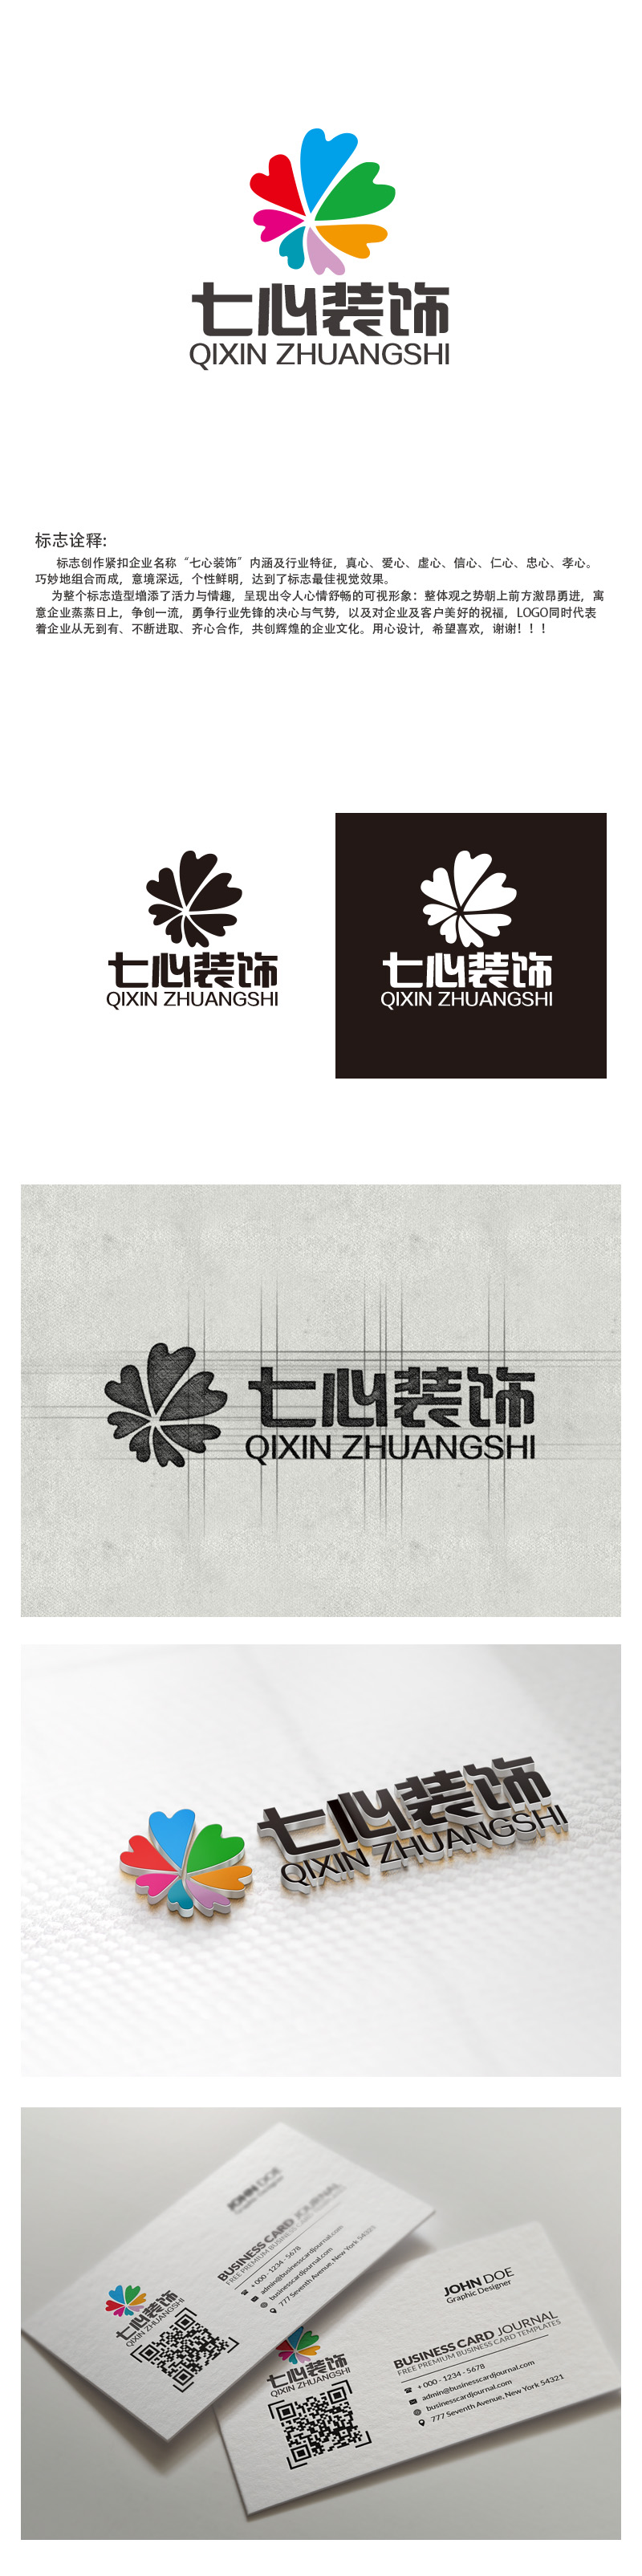 秦晓东的昆明七心装饰设计有限公司logo设计